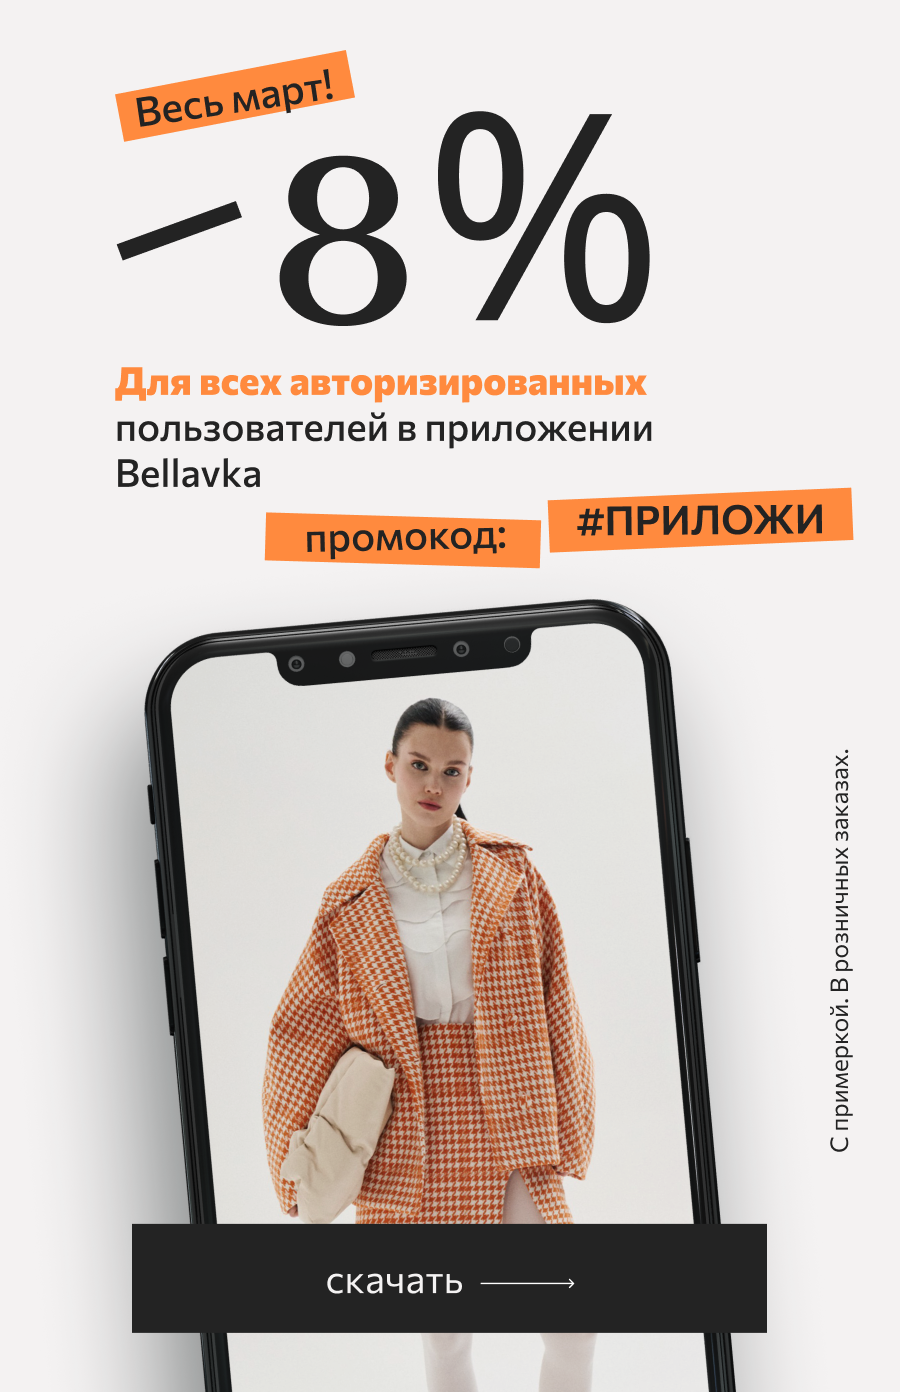 Белорусская одежда - интернет магазин Белбренд